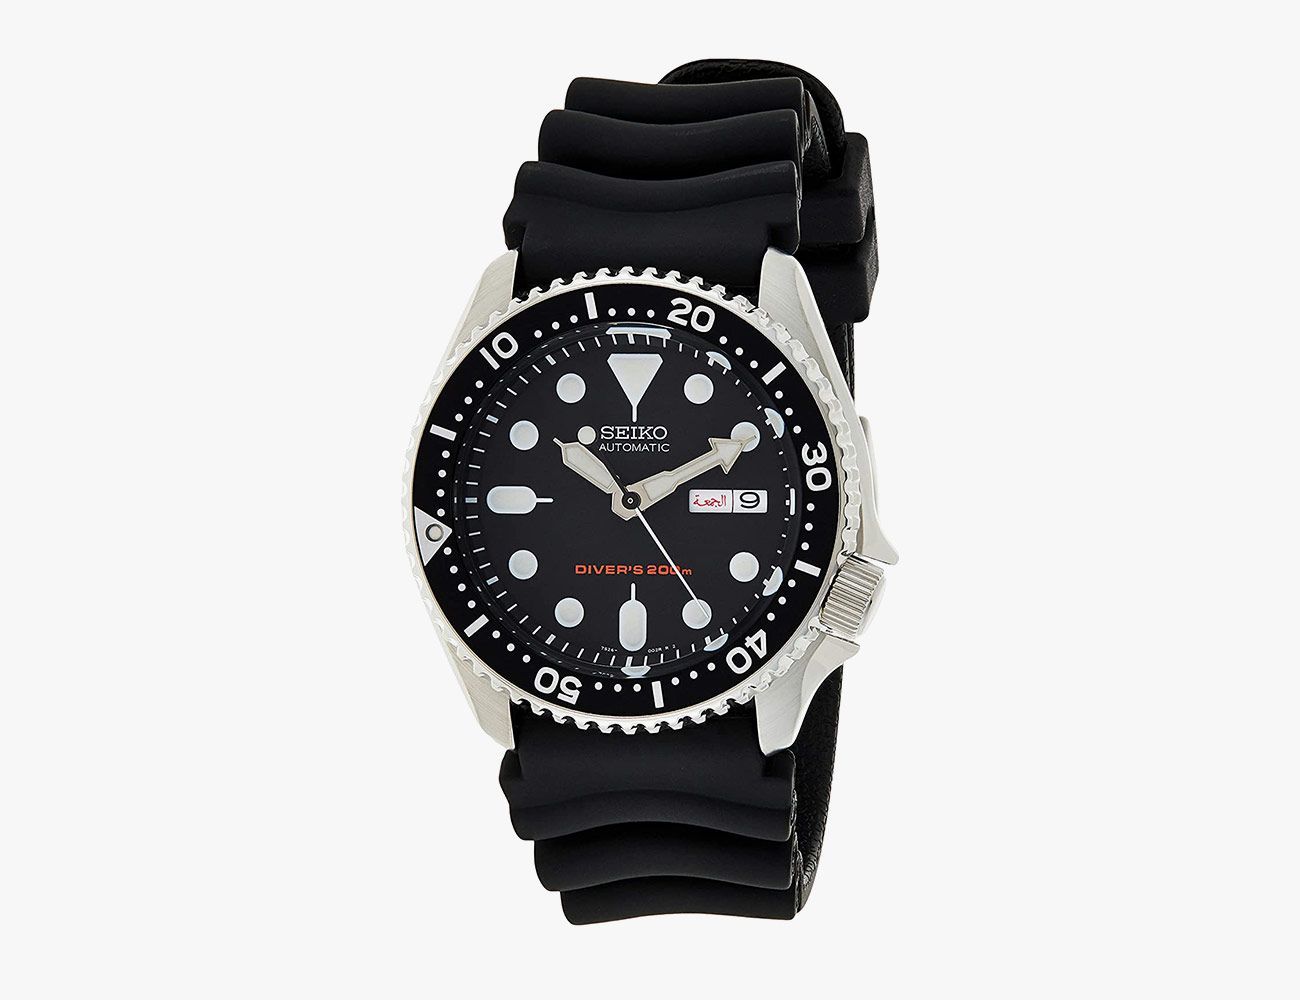 15 Best Dive Watches Under $1000 - Gear Patrol